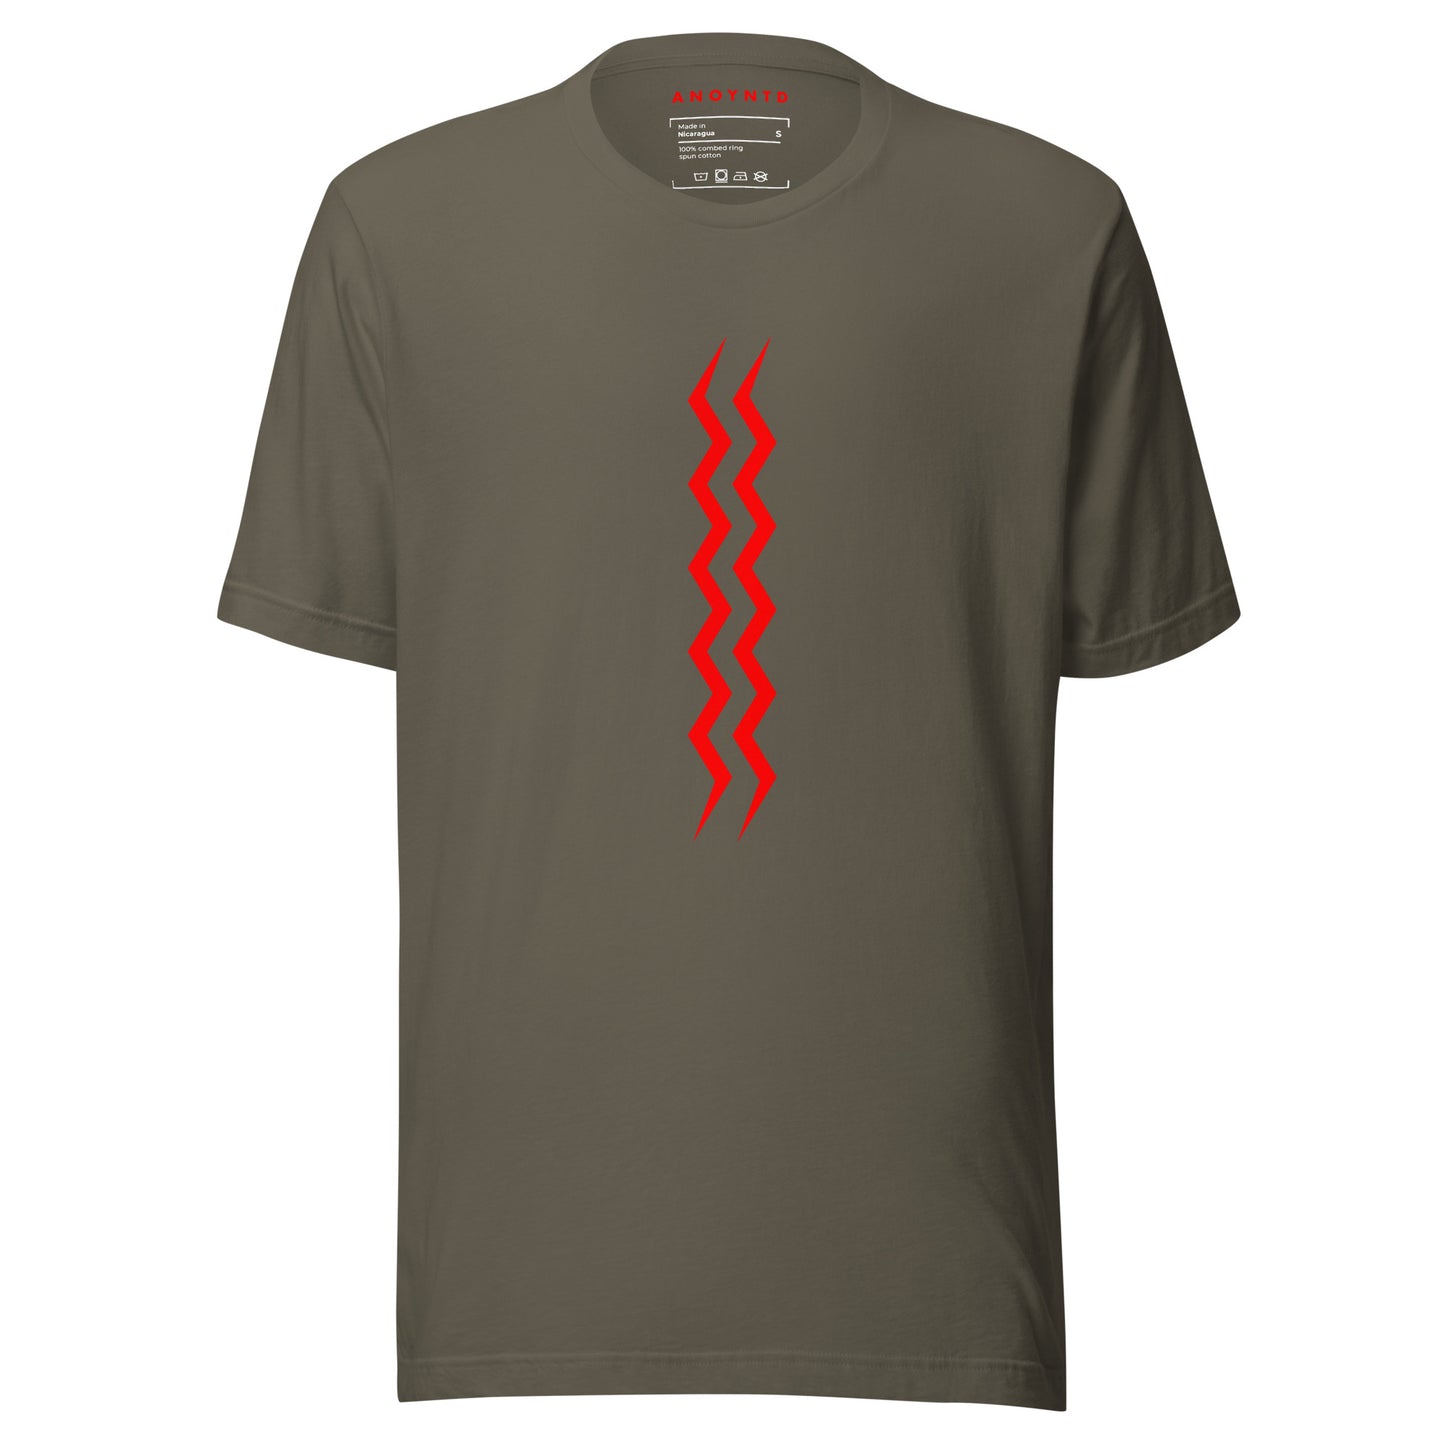 ANOYNTD Vertical Series (R) Unisex t-shirt